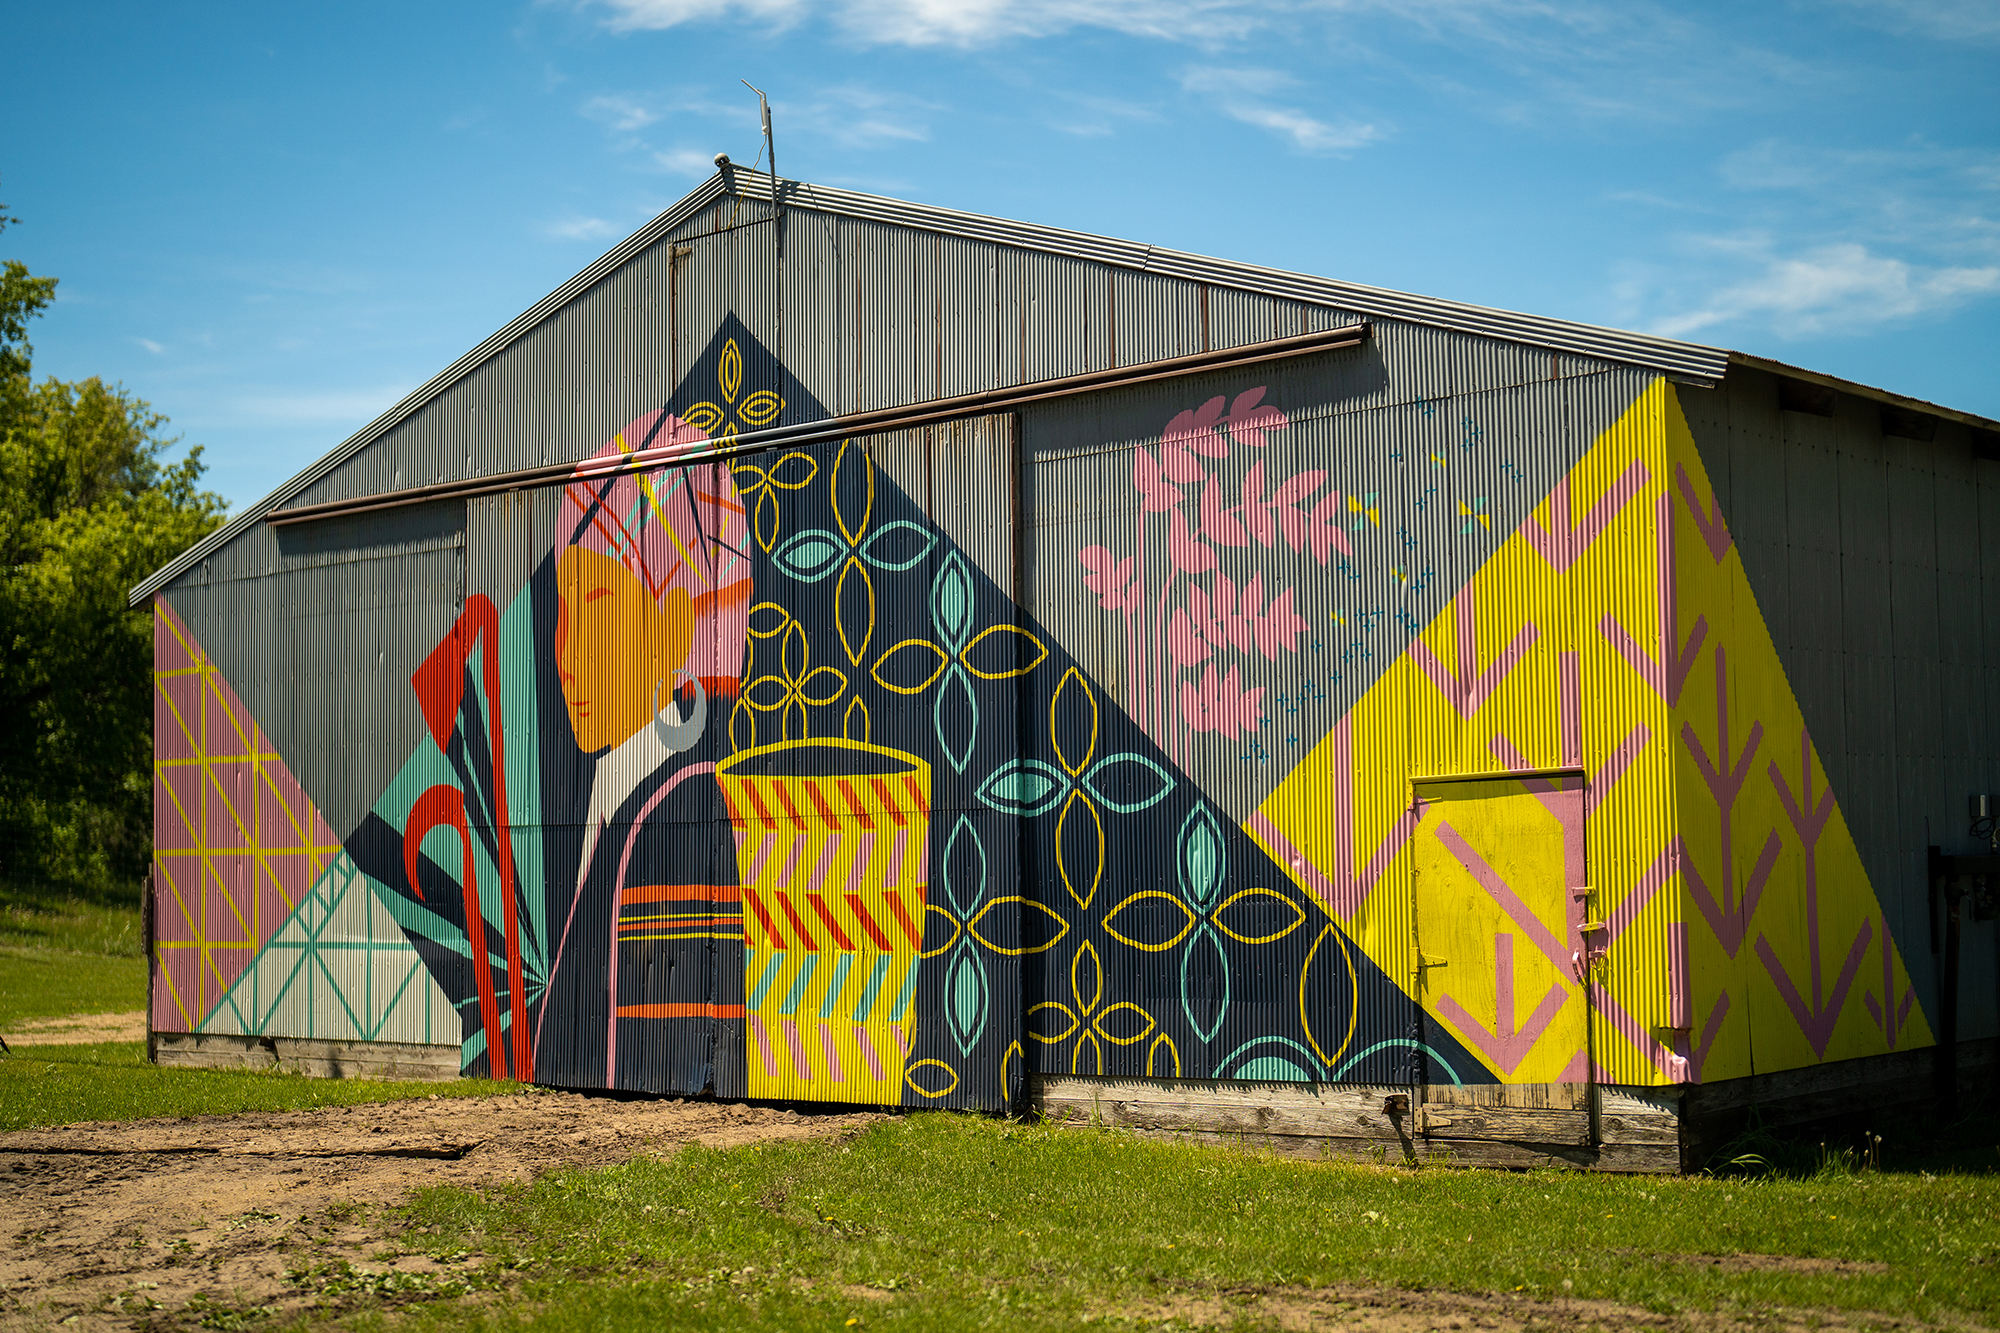 A vibrant mural on a farm building.